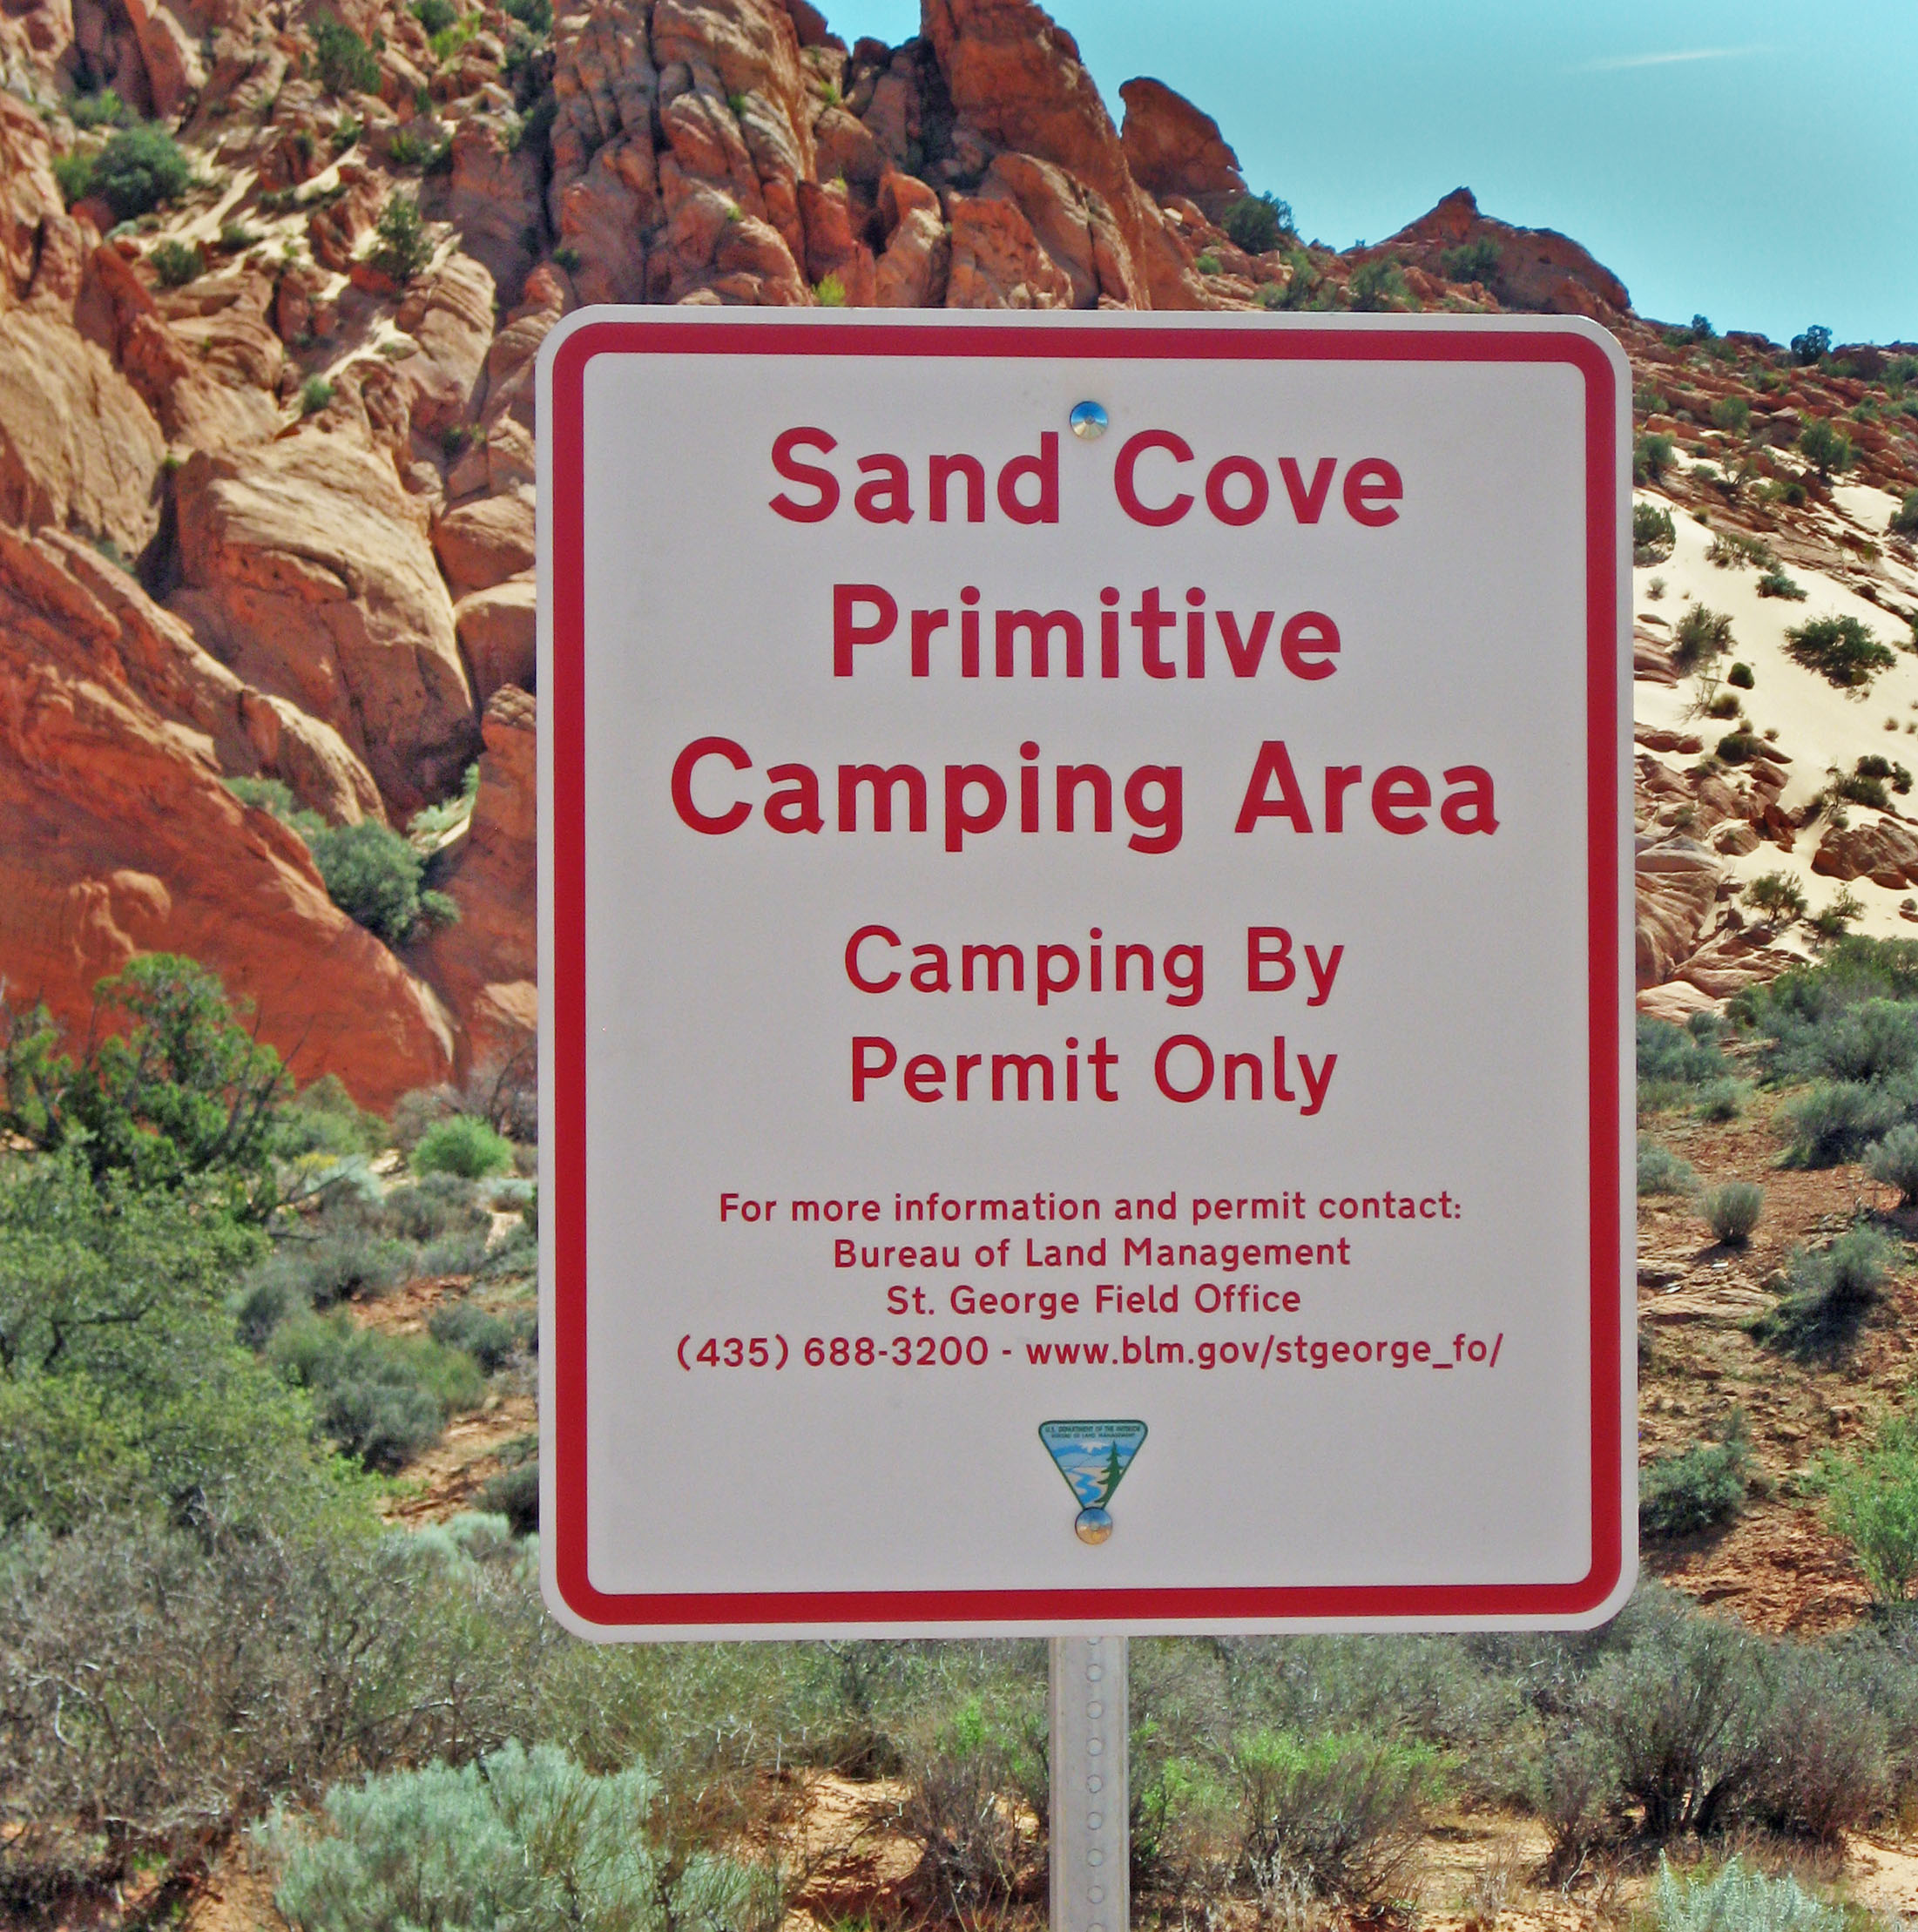 Vervelen Pickering technisch Red Cliffs Desert Reserve » Web #8 – Sand Cove Camping rules